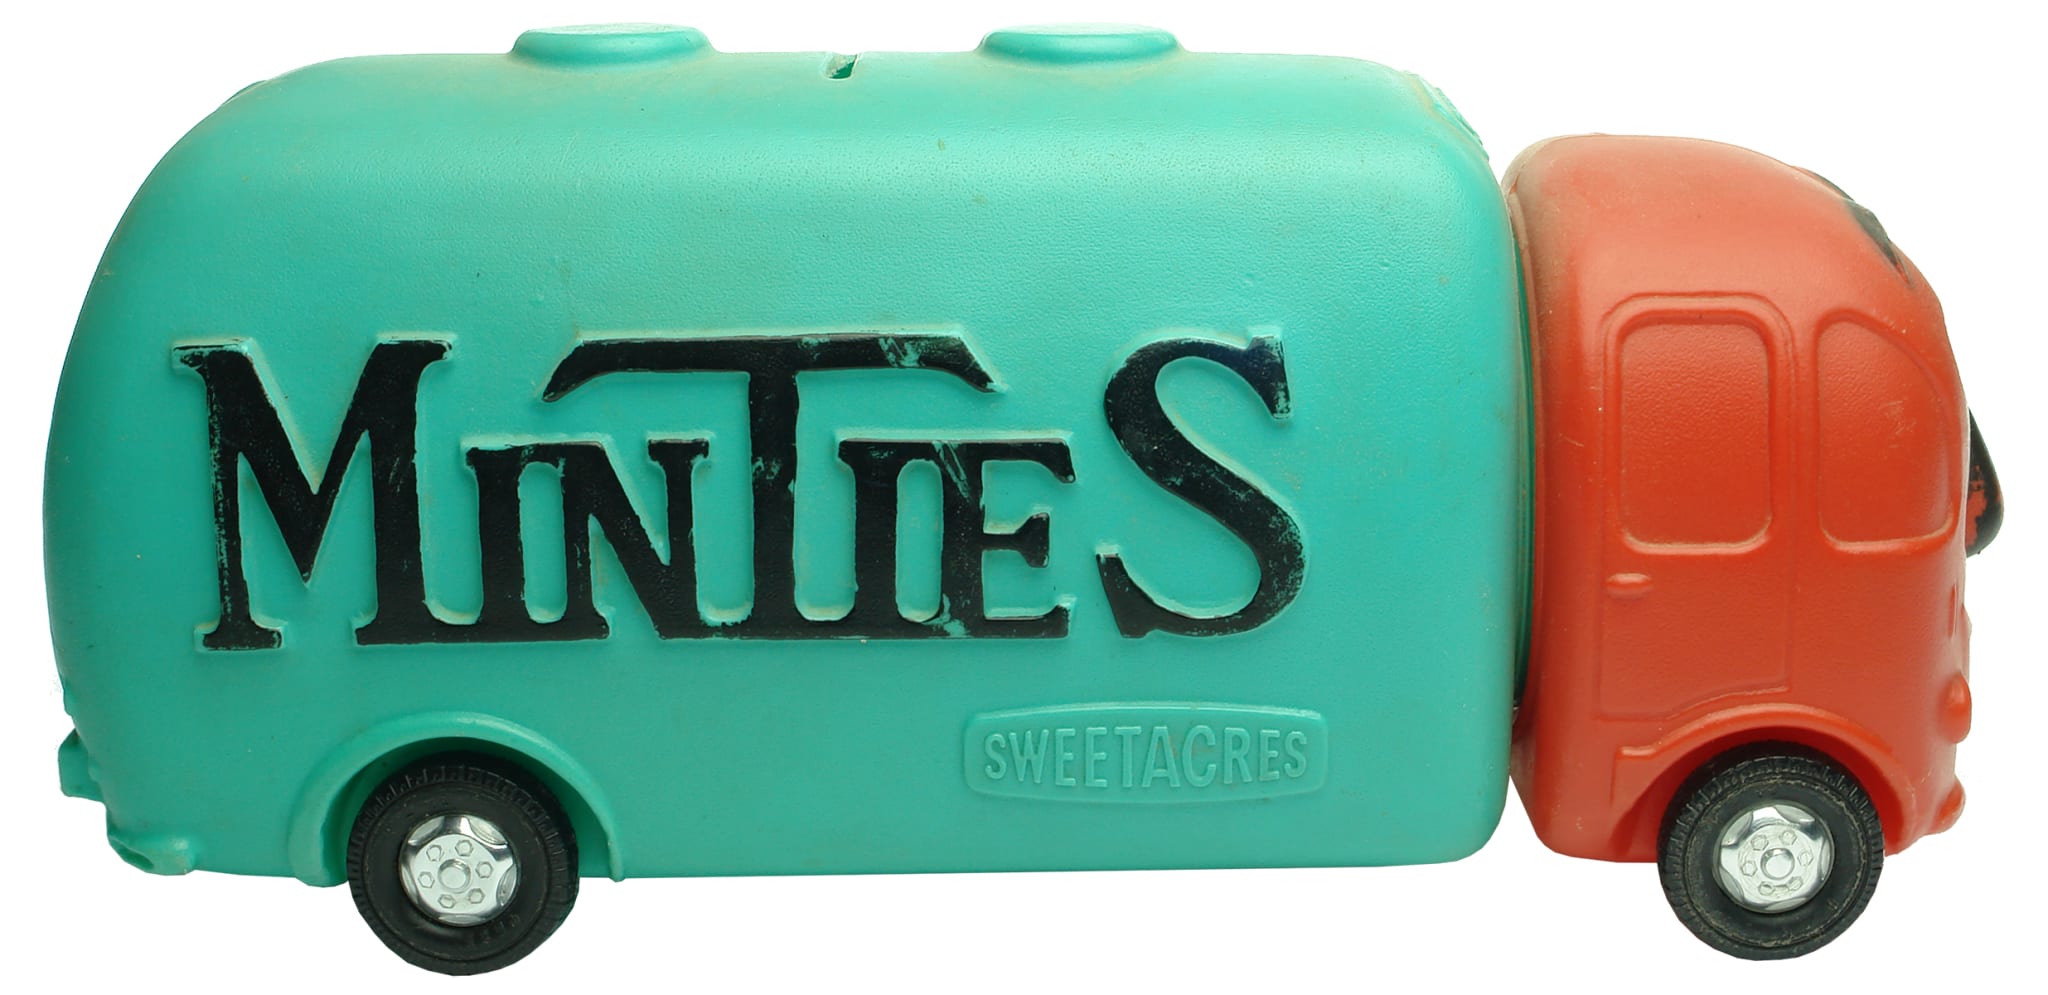 Minties Sweetacres Plasti Mony Box Truck